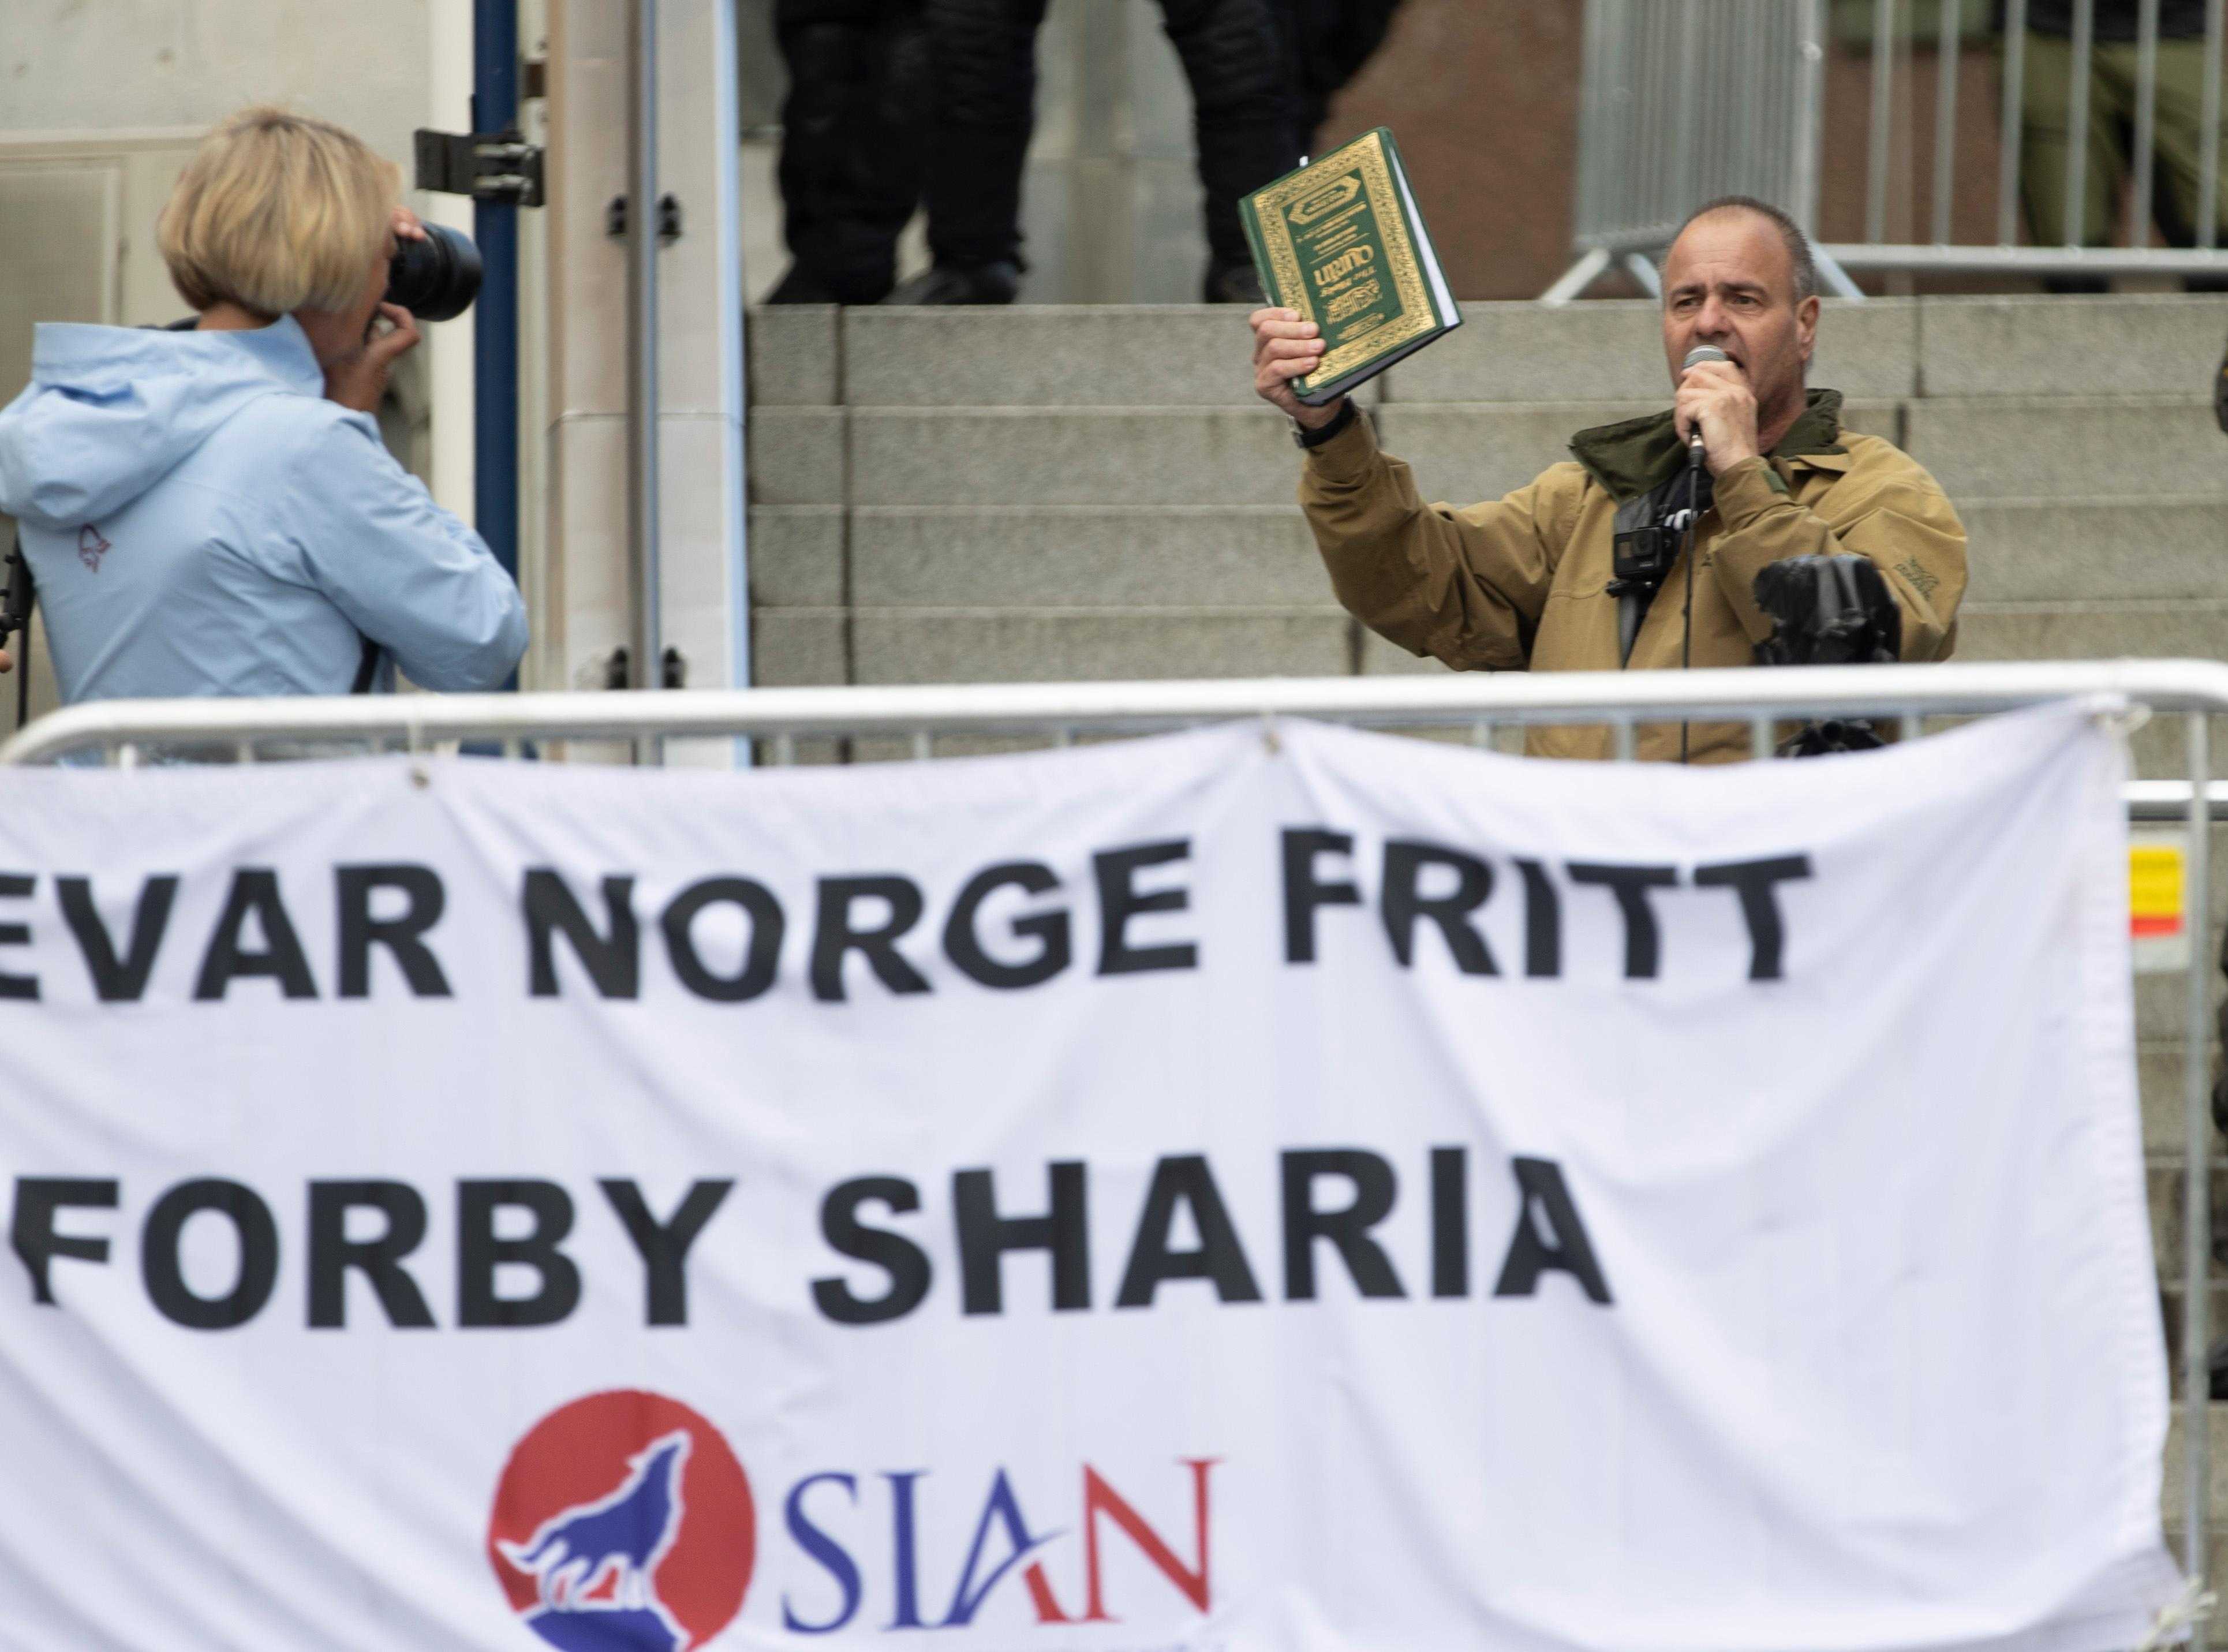 Seperti Karma! Ekstrimis Anti-Islam di Norwegia Ditabrak Usai Sengaja Membakar Al Qur'an di Hadapan Warga Muslim